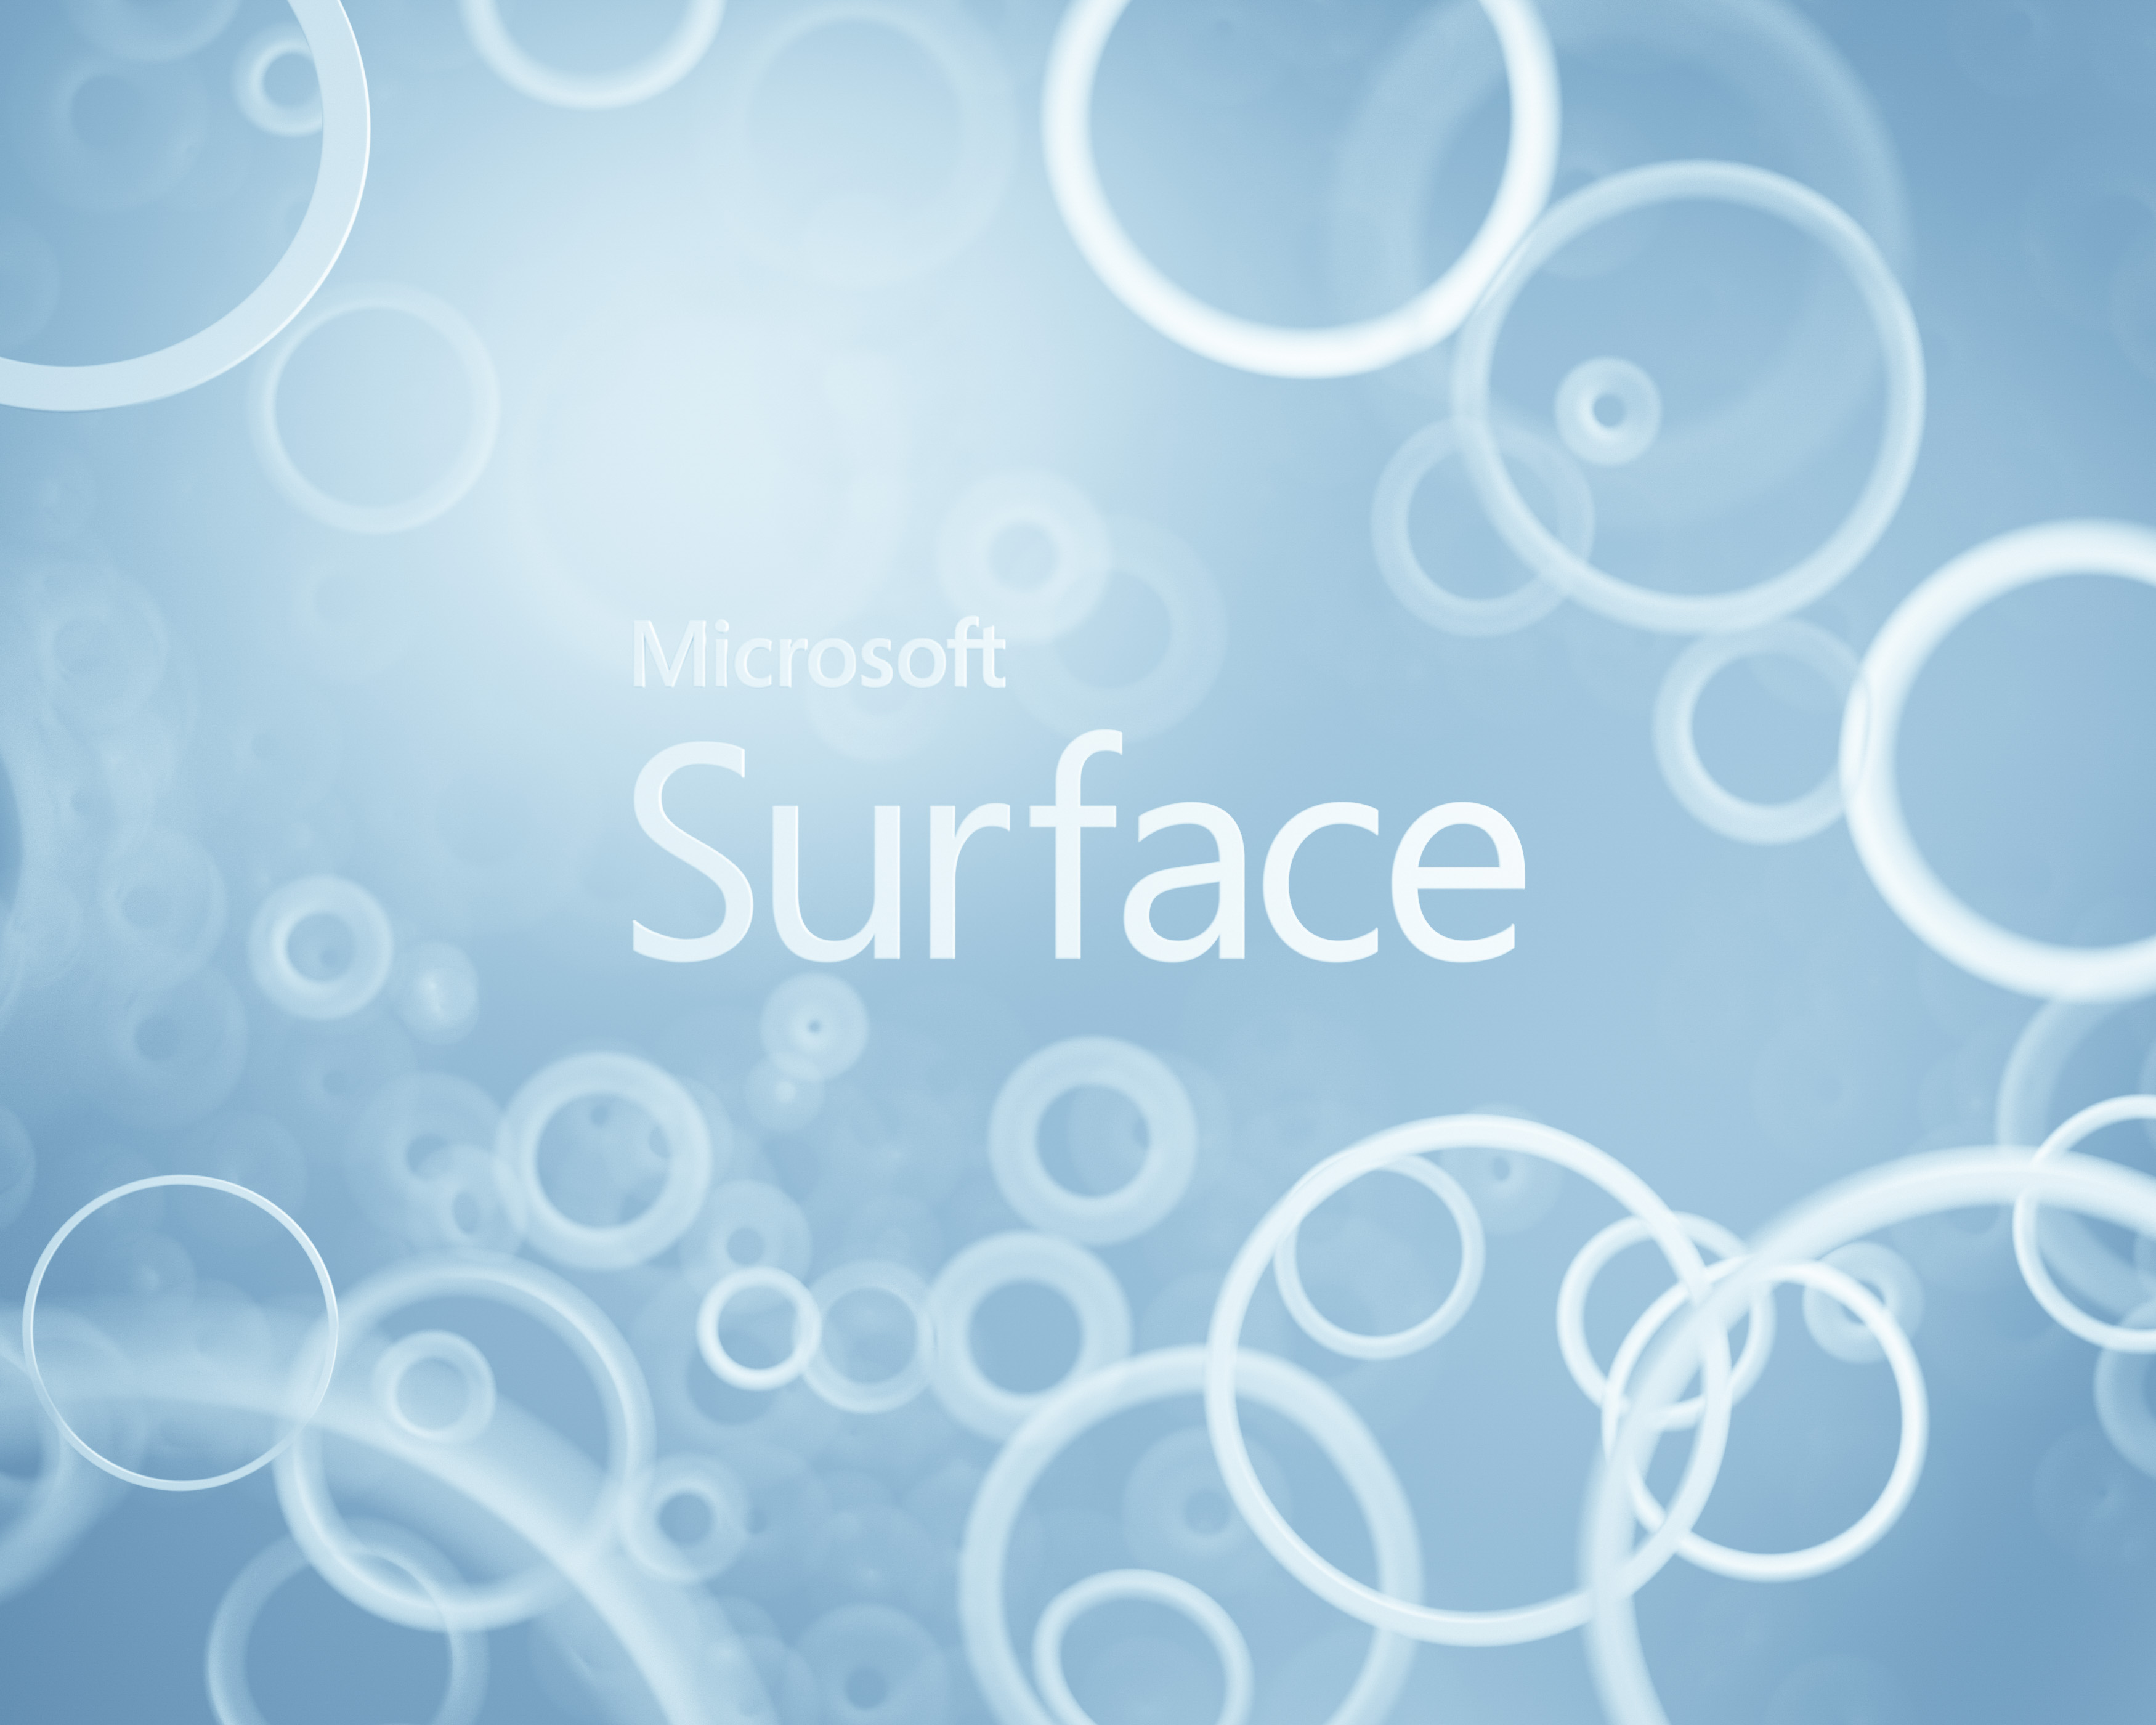 SurfacePro3Wallpaper [35002800 jpg 35 Mb] SurfacePro3Wallpaper